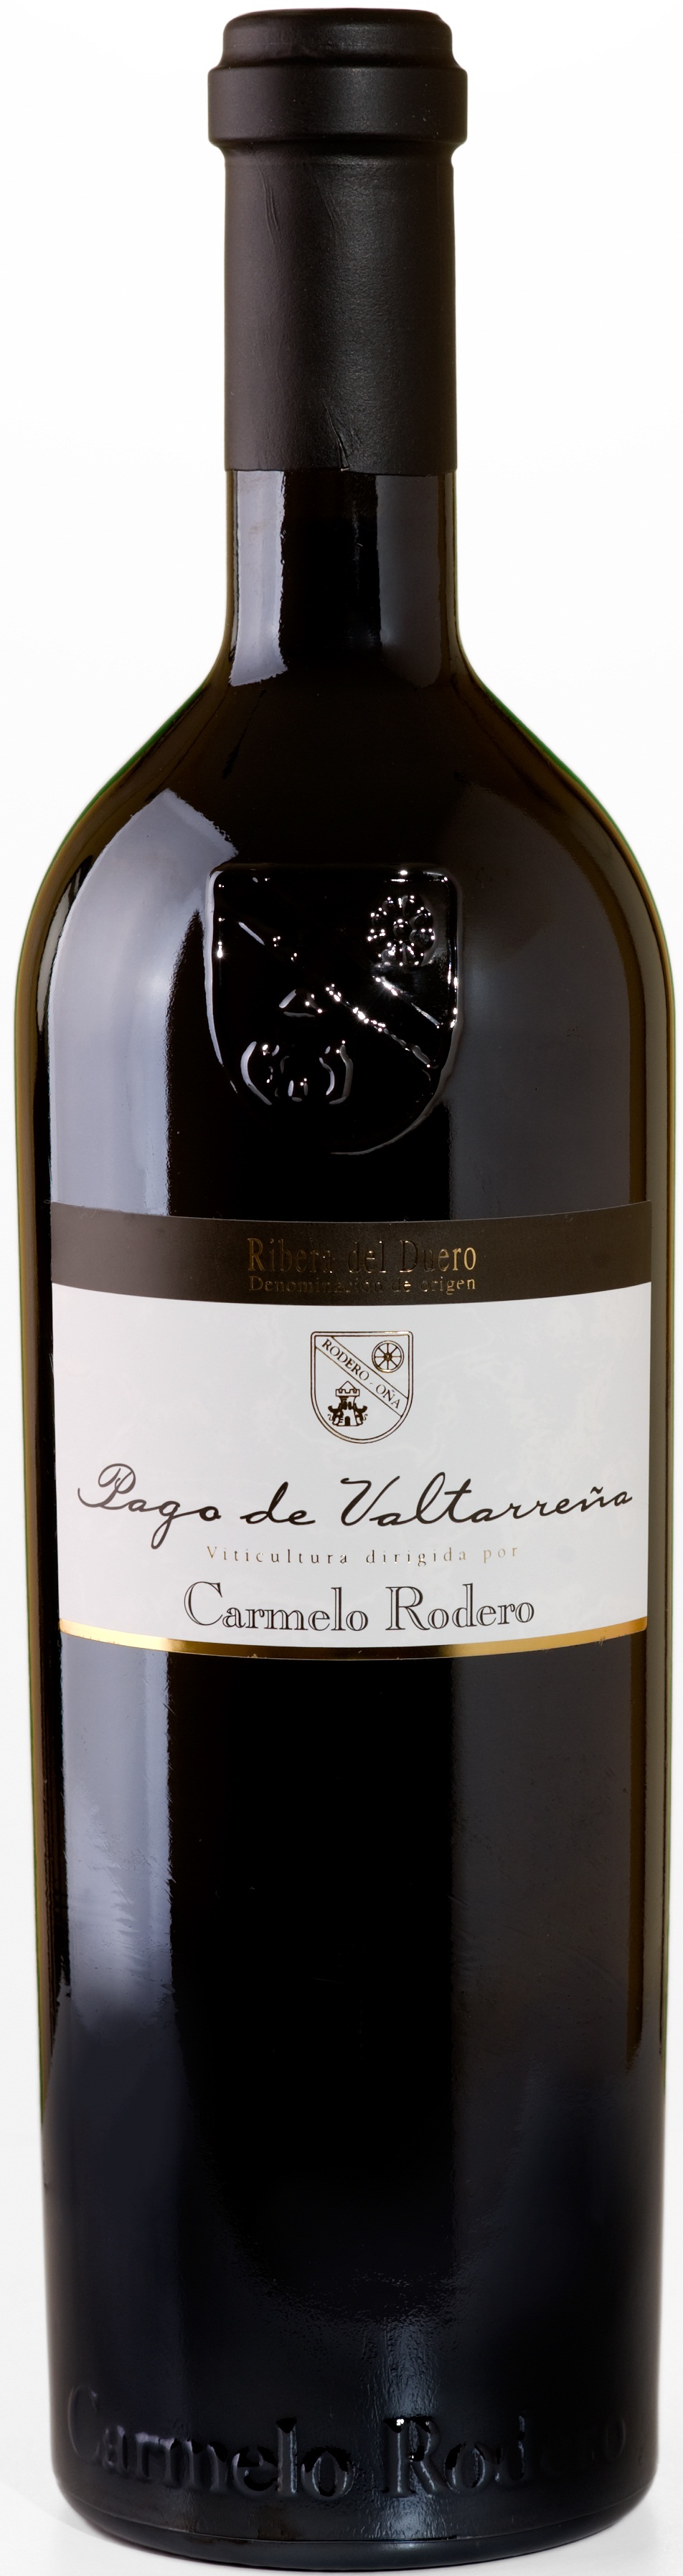 Imagen de la botella de Vino Carmelo Rodero Pago de Valtarreña